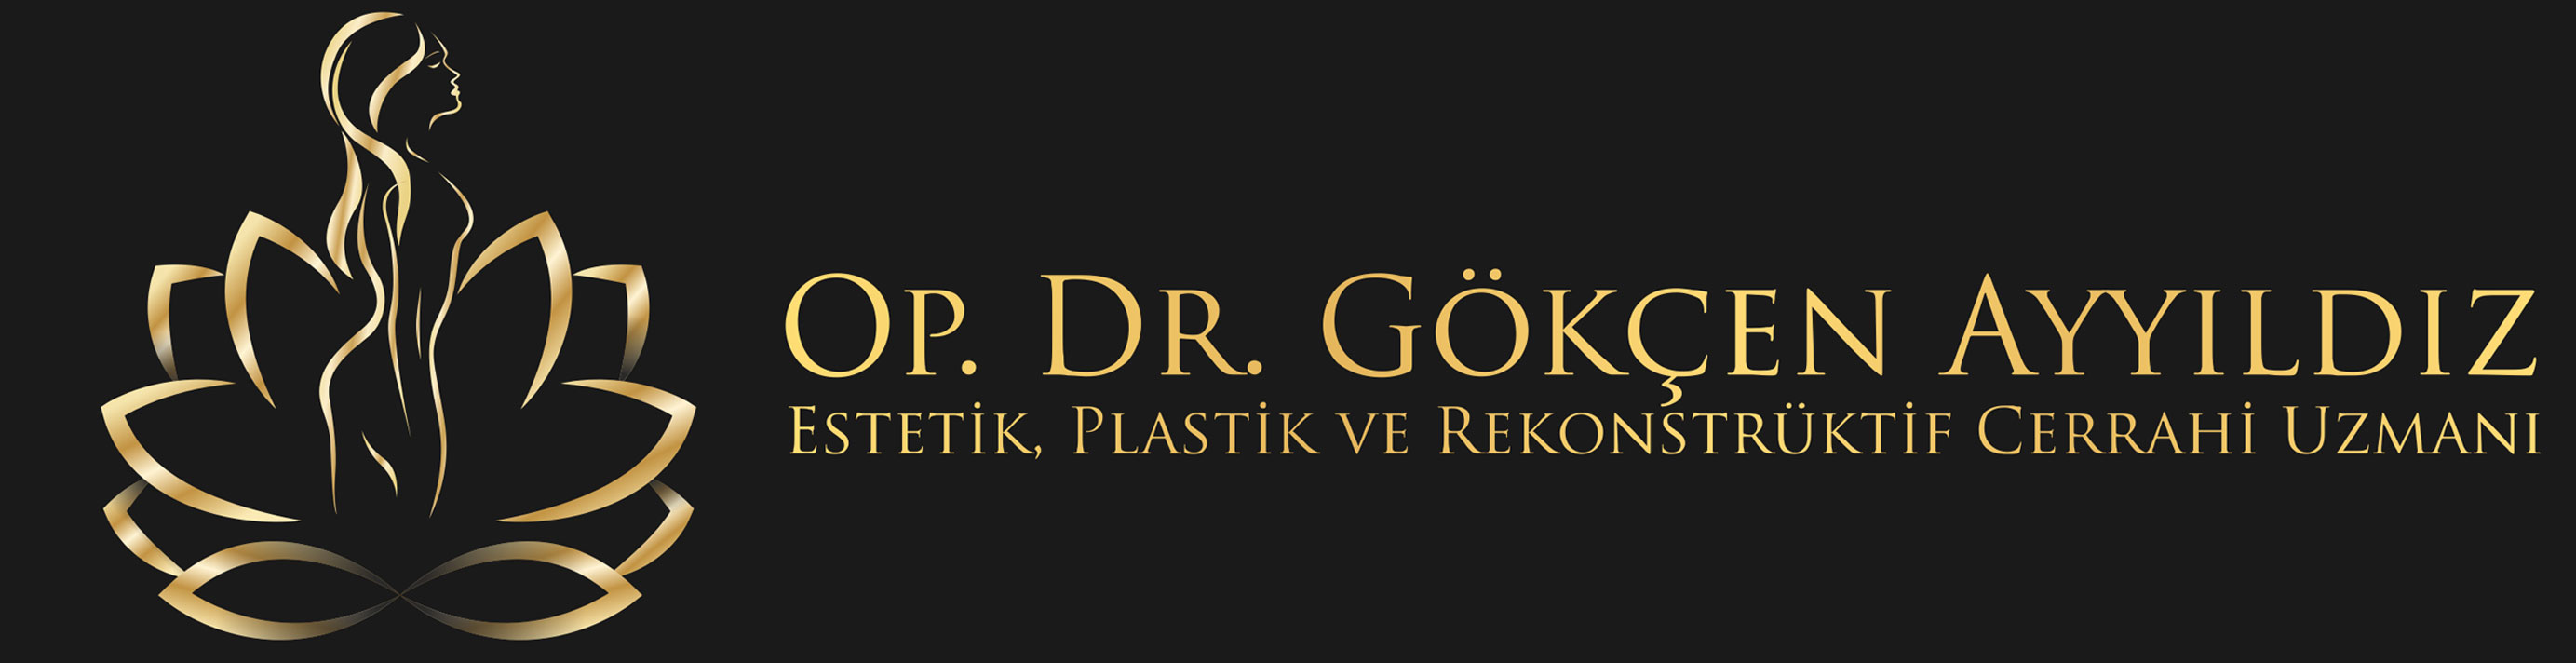 Op. Dr. Gökçen AYYILDDIZ